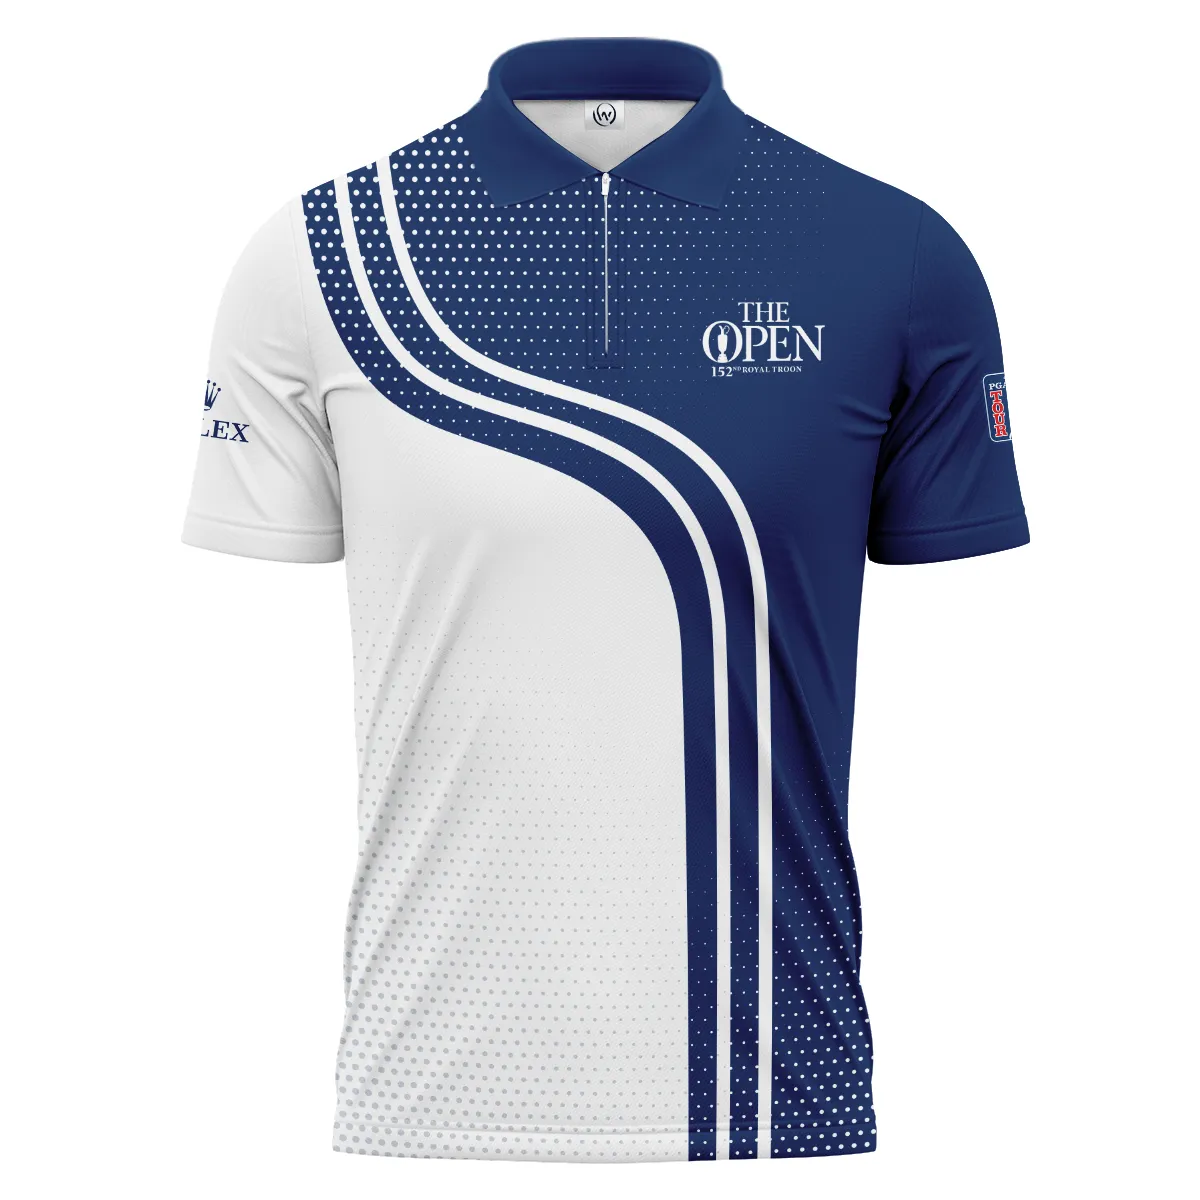 Golf Blue Mix White Sport 152nd Open Championship Pinehurst Rolex Zipper Hoodie Shirt All Over Prints QTTOP1806A1ROXZHD